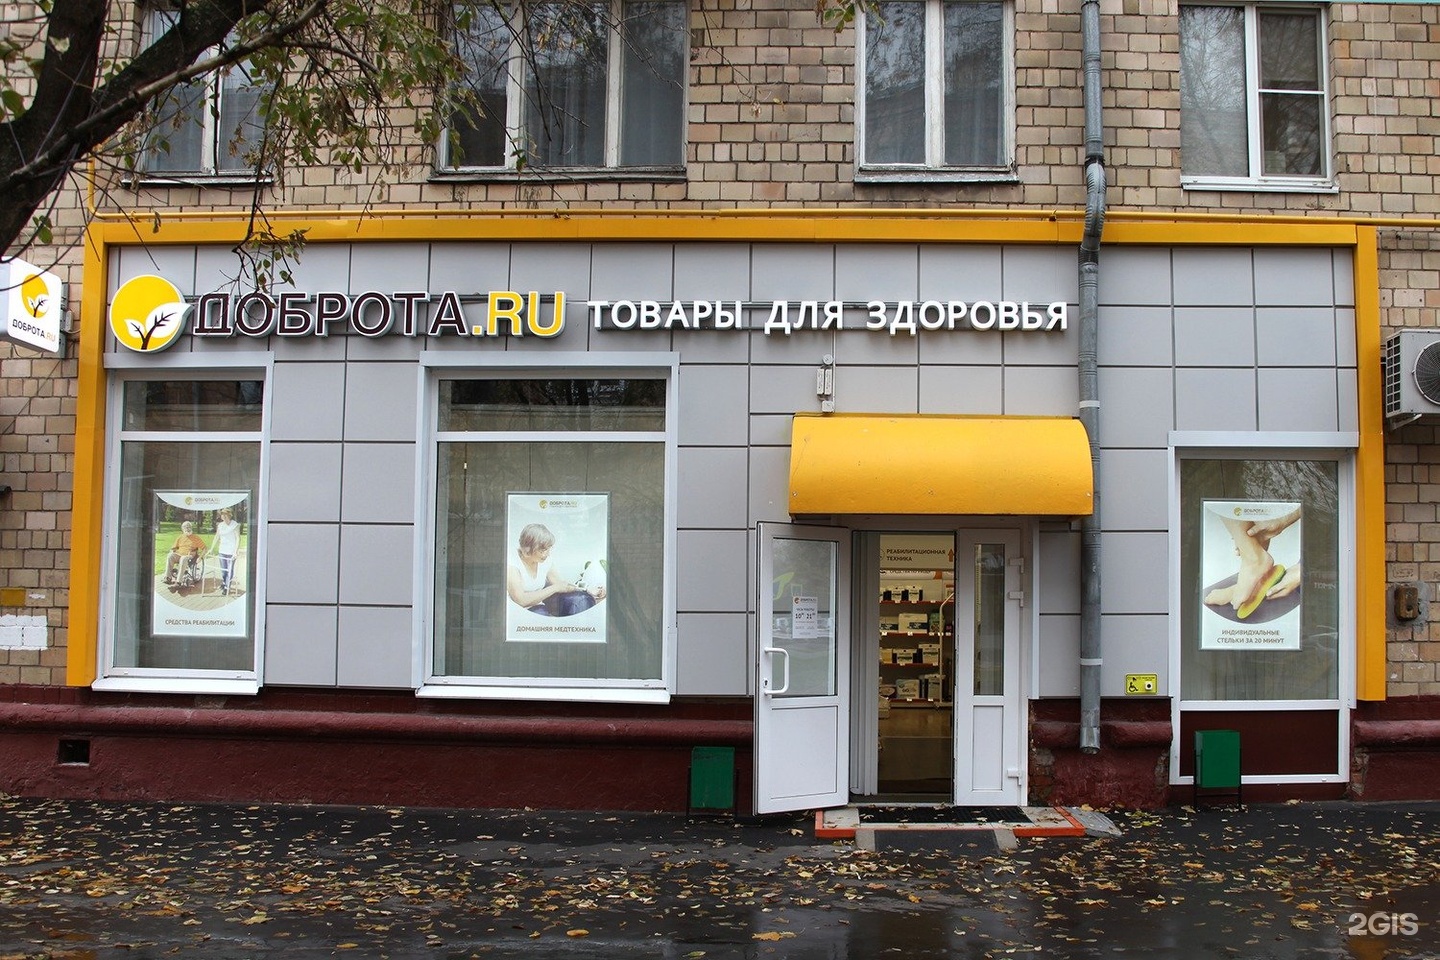 Мед Магазин Ру Москва